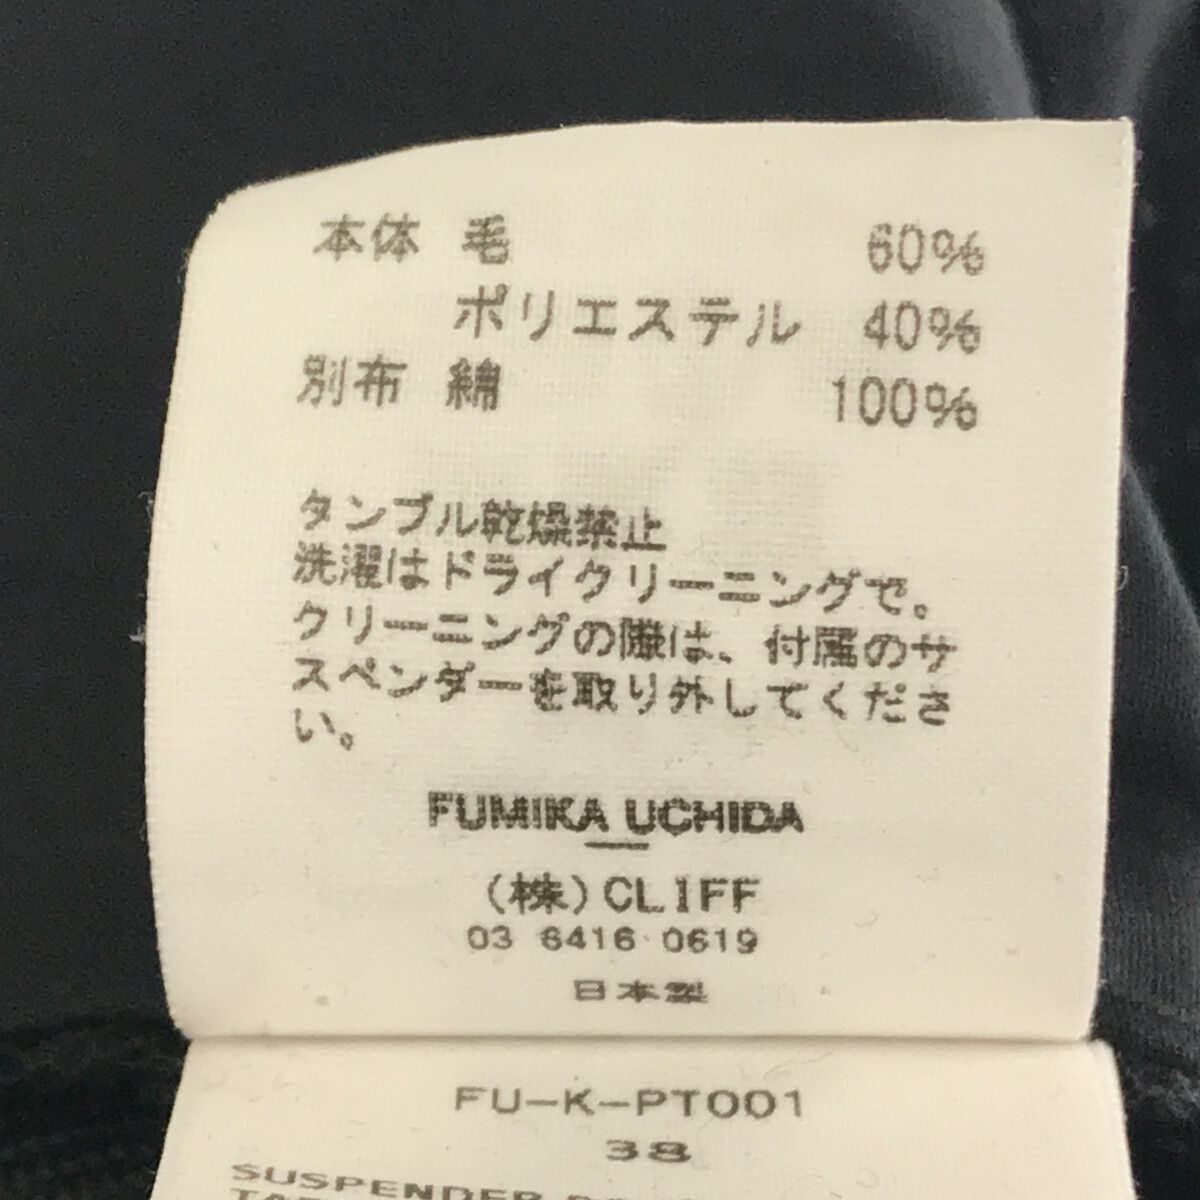 fumika uchida 黒 サスペンダーパンツ36 フミカウチダ - パンツ